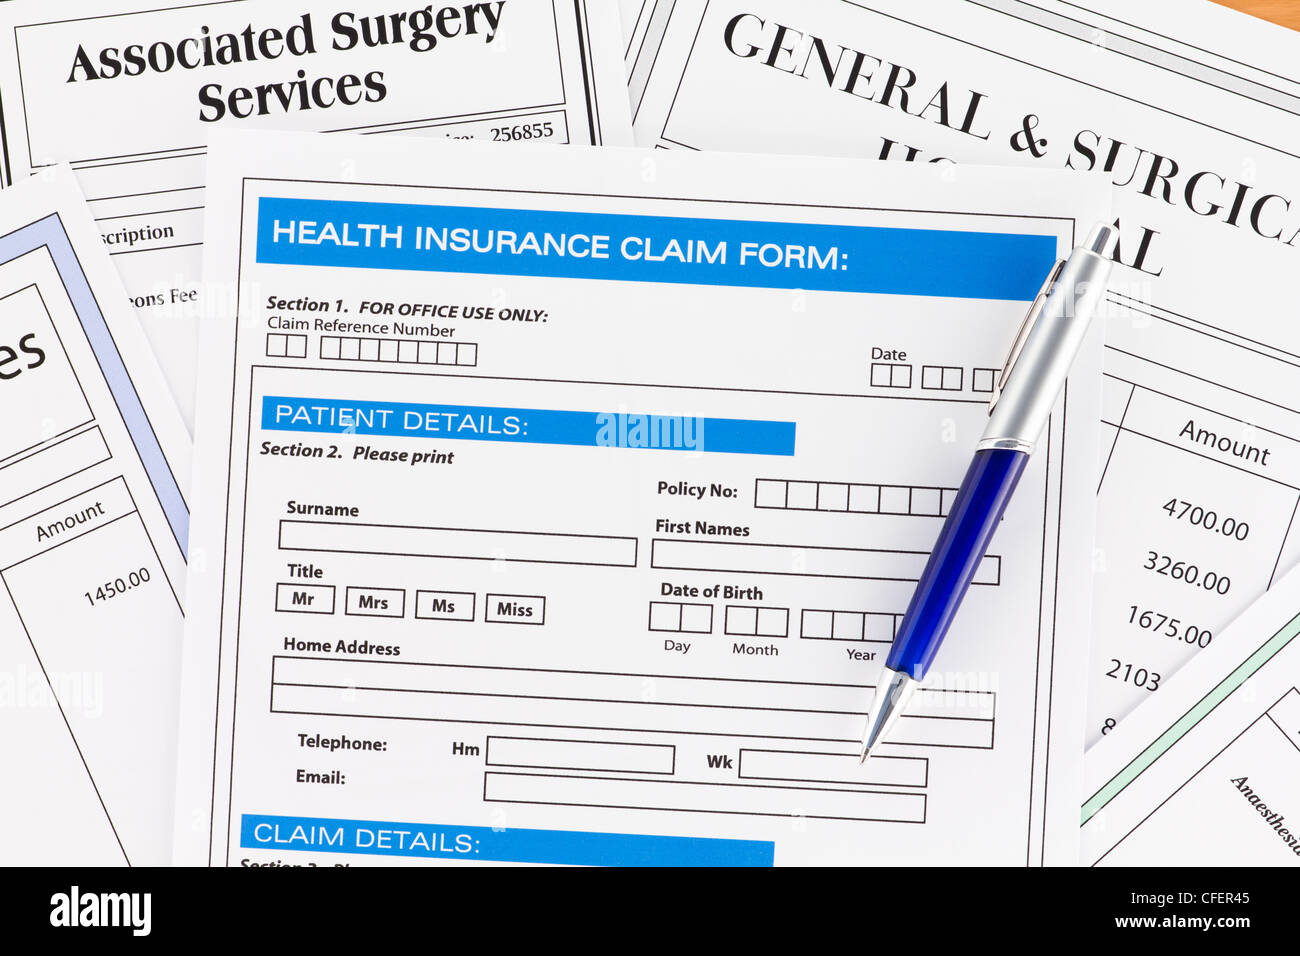 Formulaire de demande d'assurance-santé avec les factures pour la chirurgie Banque D'Images